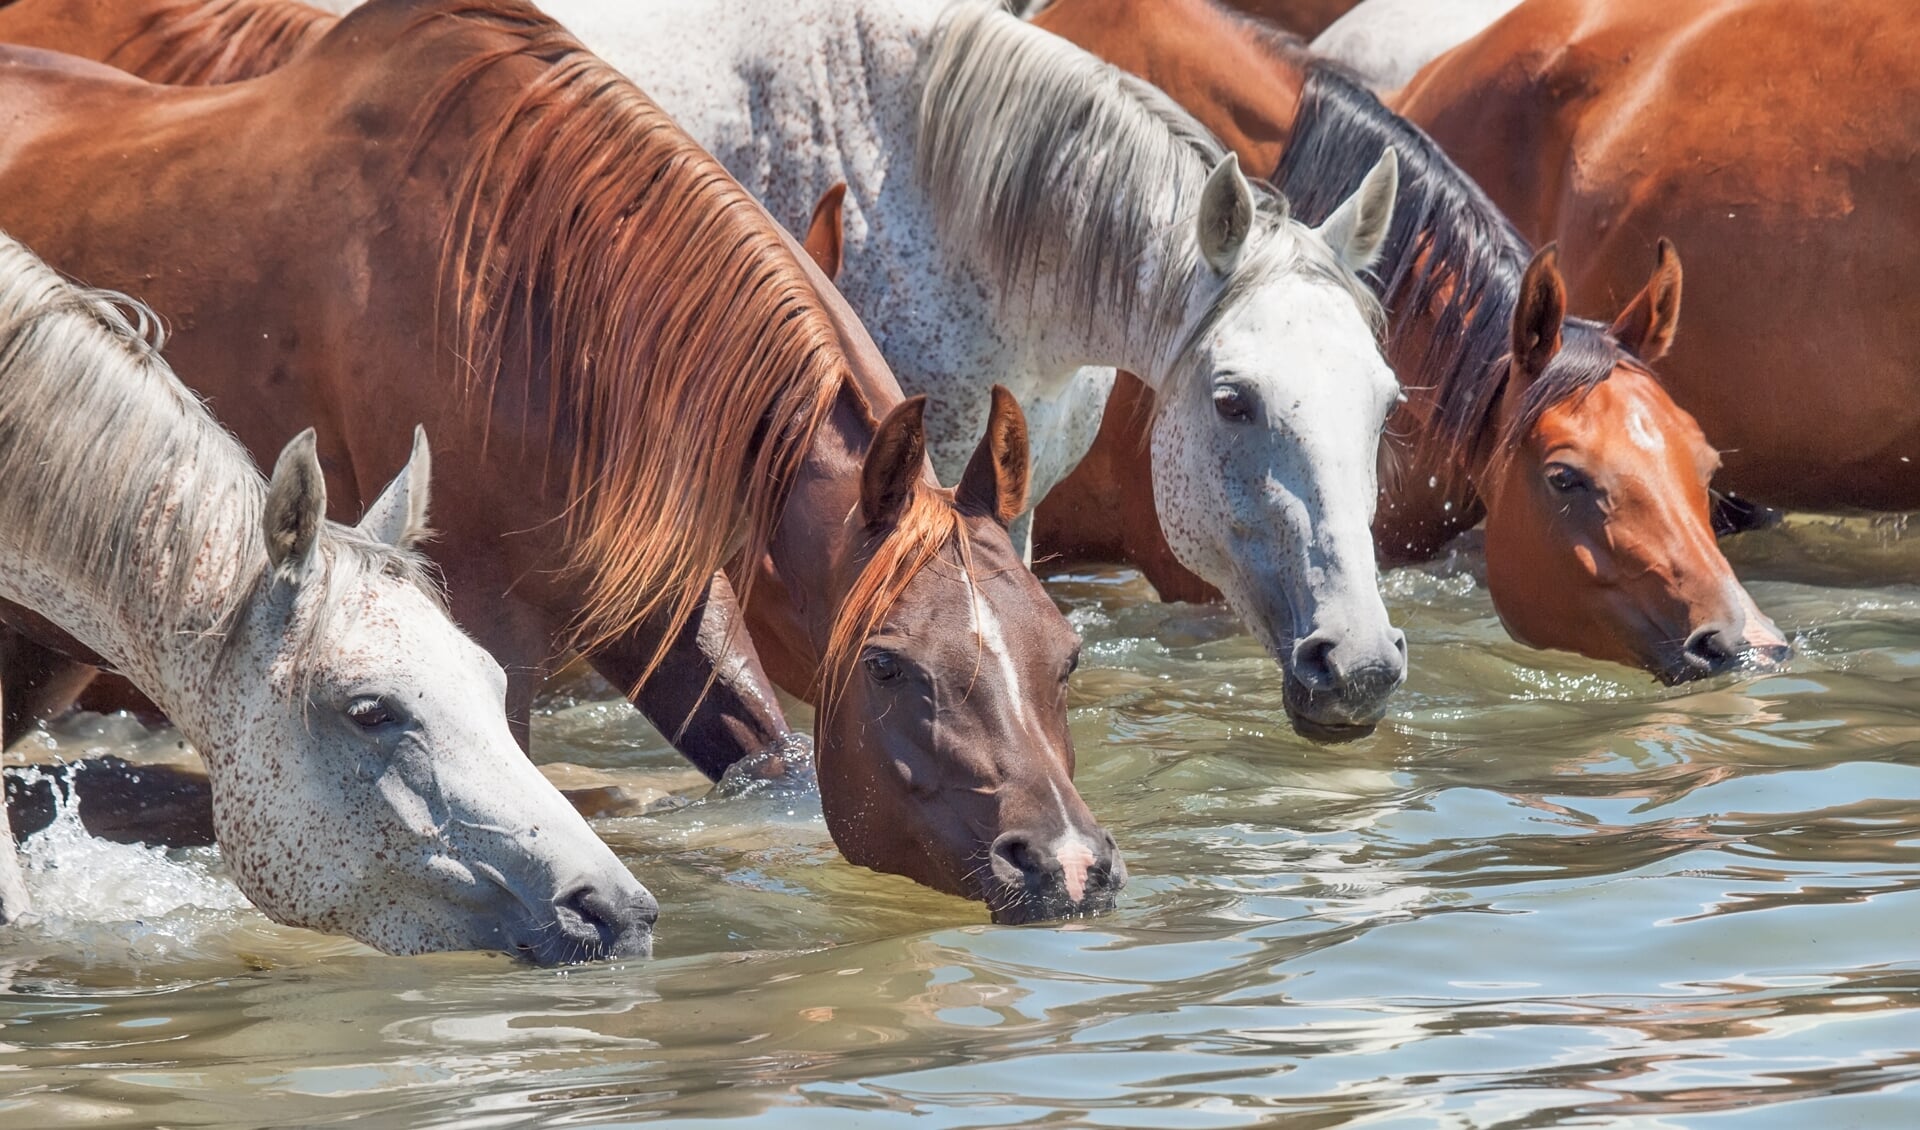 Het is belangrijk dat paarden altijd toegang hebben tot schoon drinkwater.